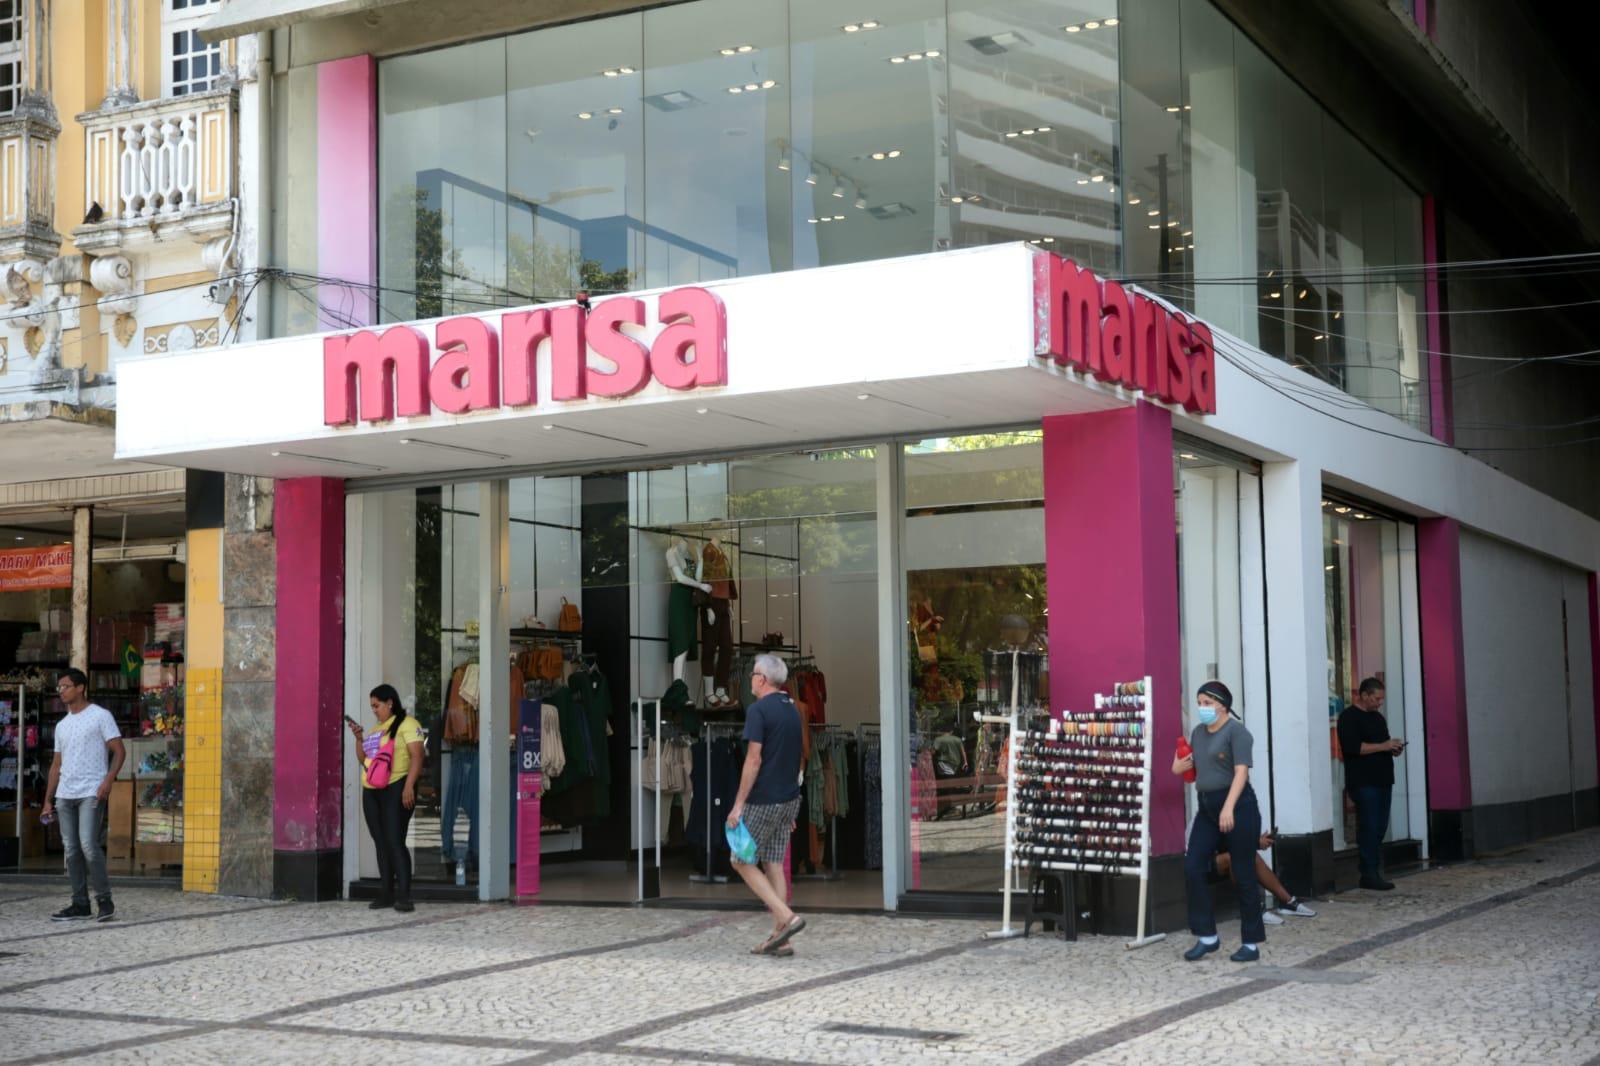 Marisa fecha lojas para reestruturação financeira